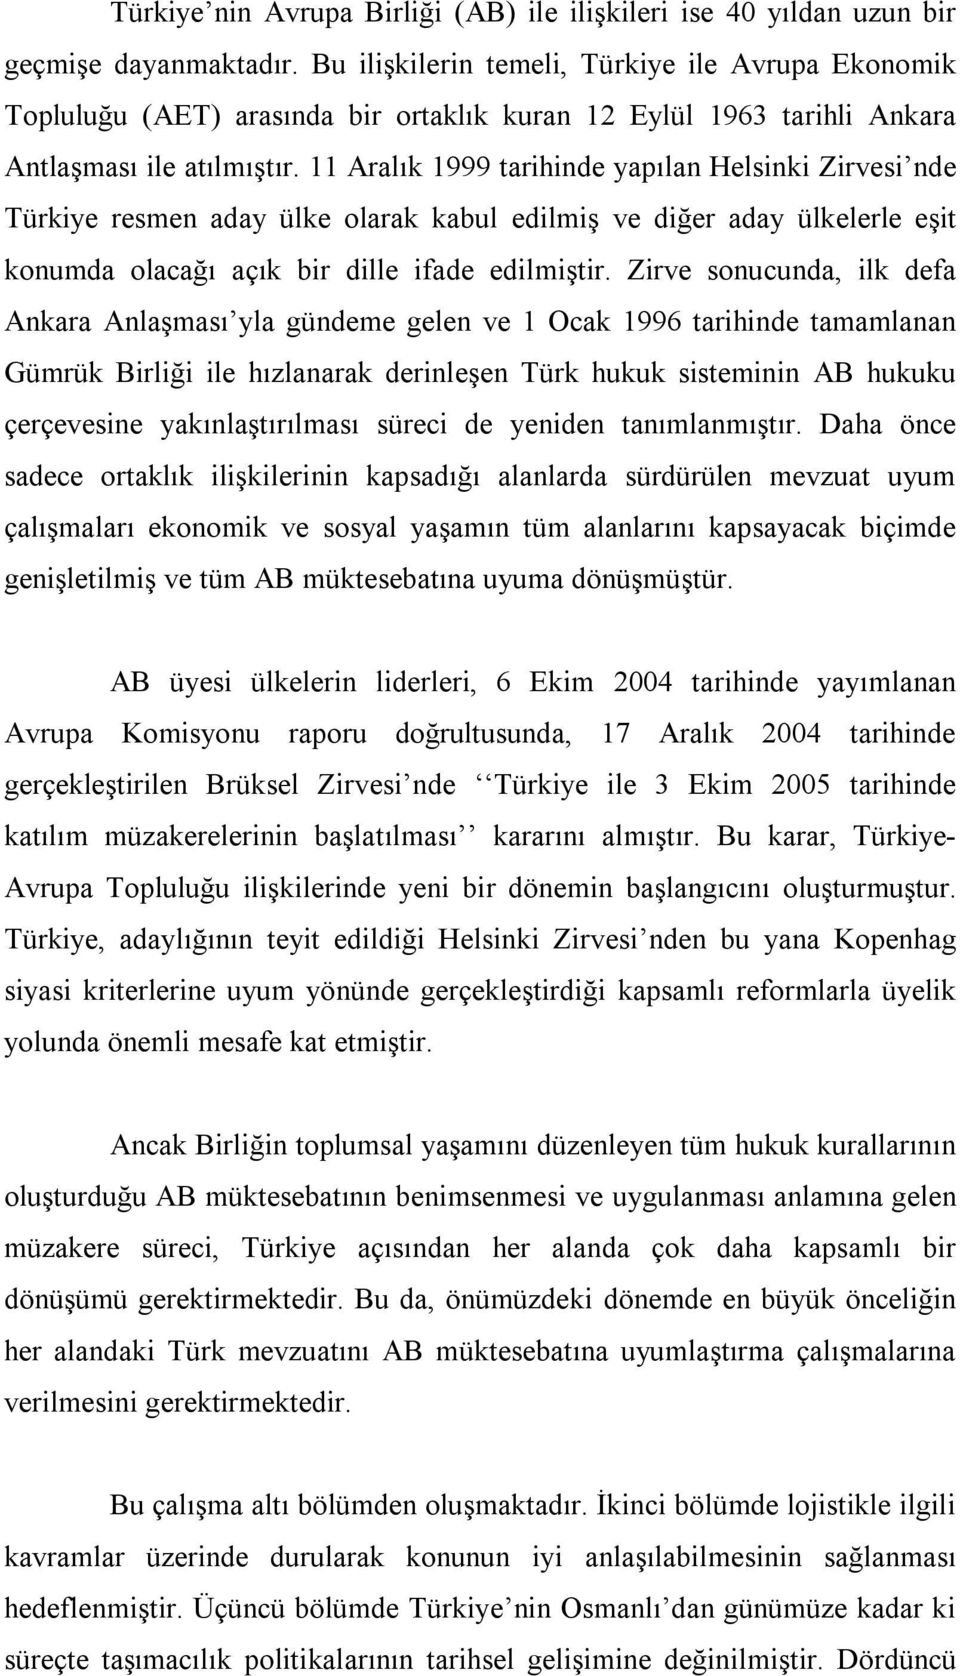 11 Aralık 1999 tarihinde yapılan Helsinki Zirvesi nde Türkiye resmen aday ülke olarak kabul edilmiş ve diğer aday ülkelerle eşit konumda olacağı açık bir dille ifade edilmiştir.